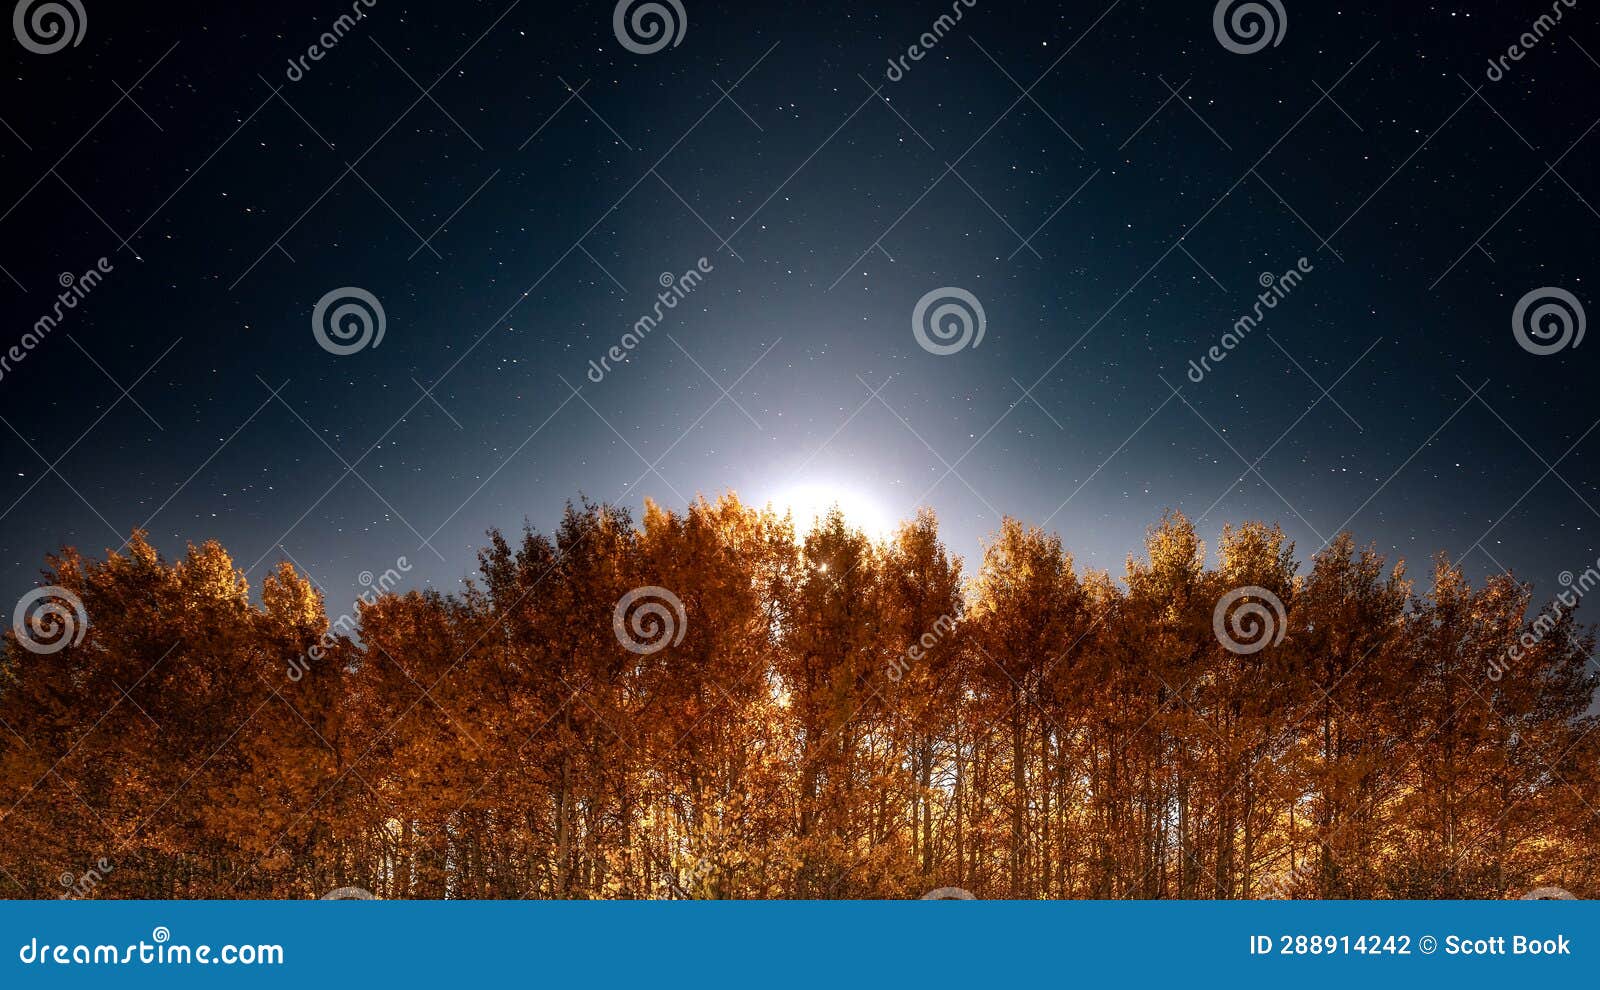 moonlight behin aspen trees at night during fall